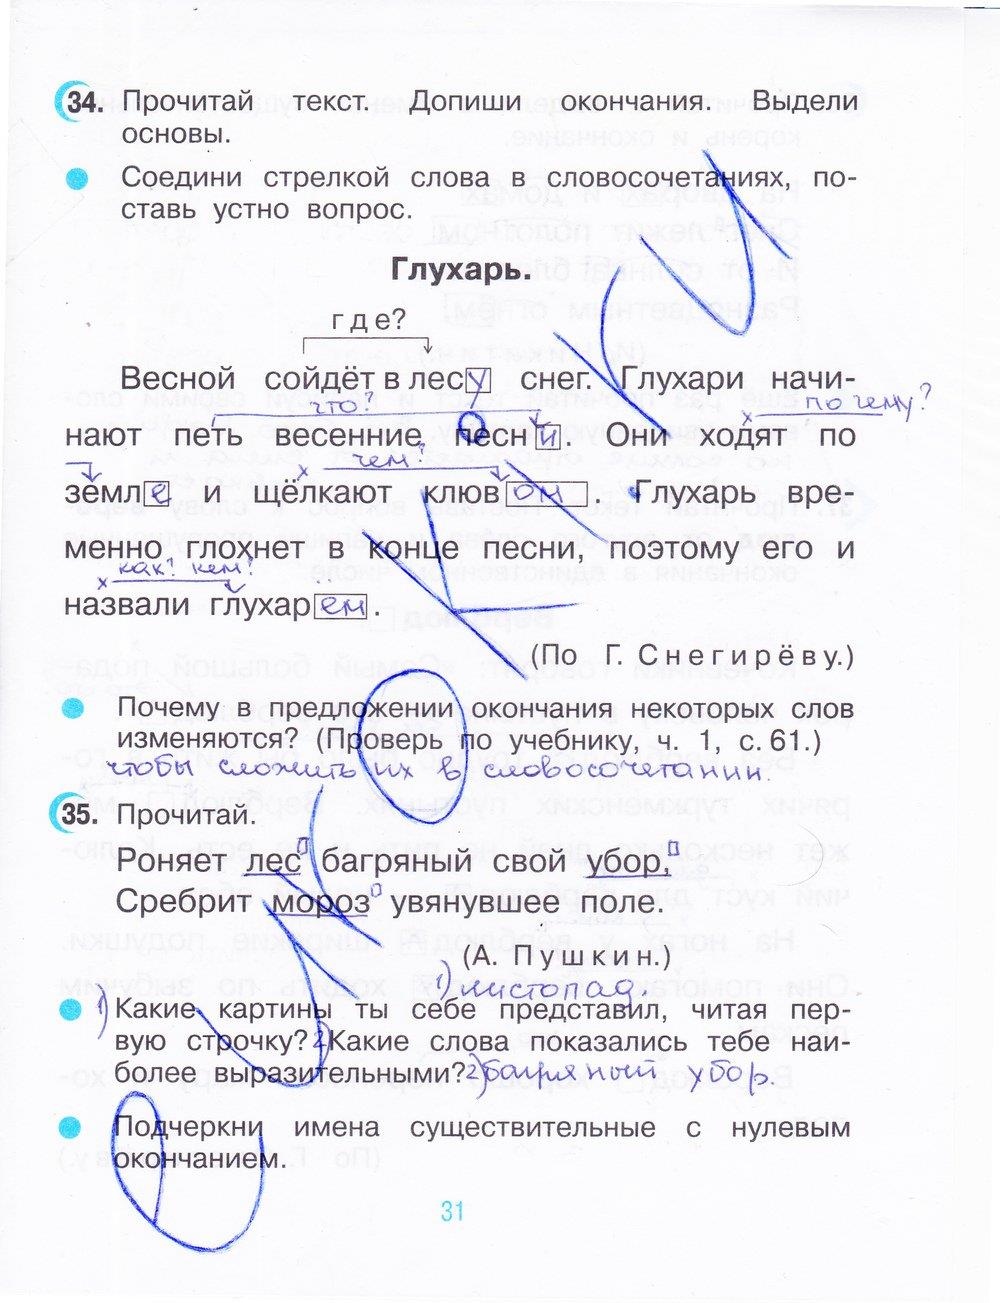 гдз 3 класс рабочая тетрадь часть 1 страница 31 русский язык Рамзаева, Савинкина